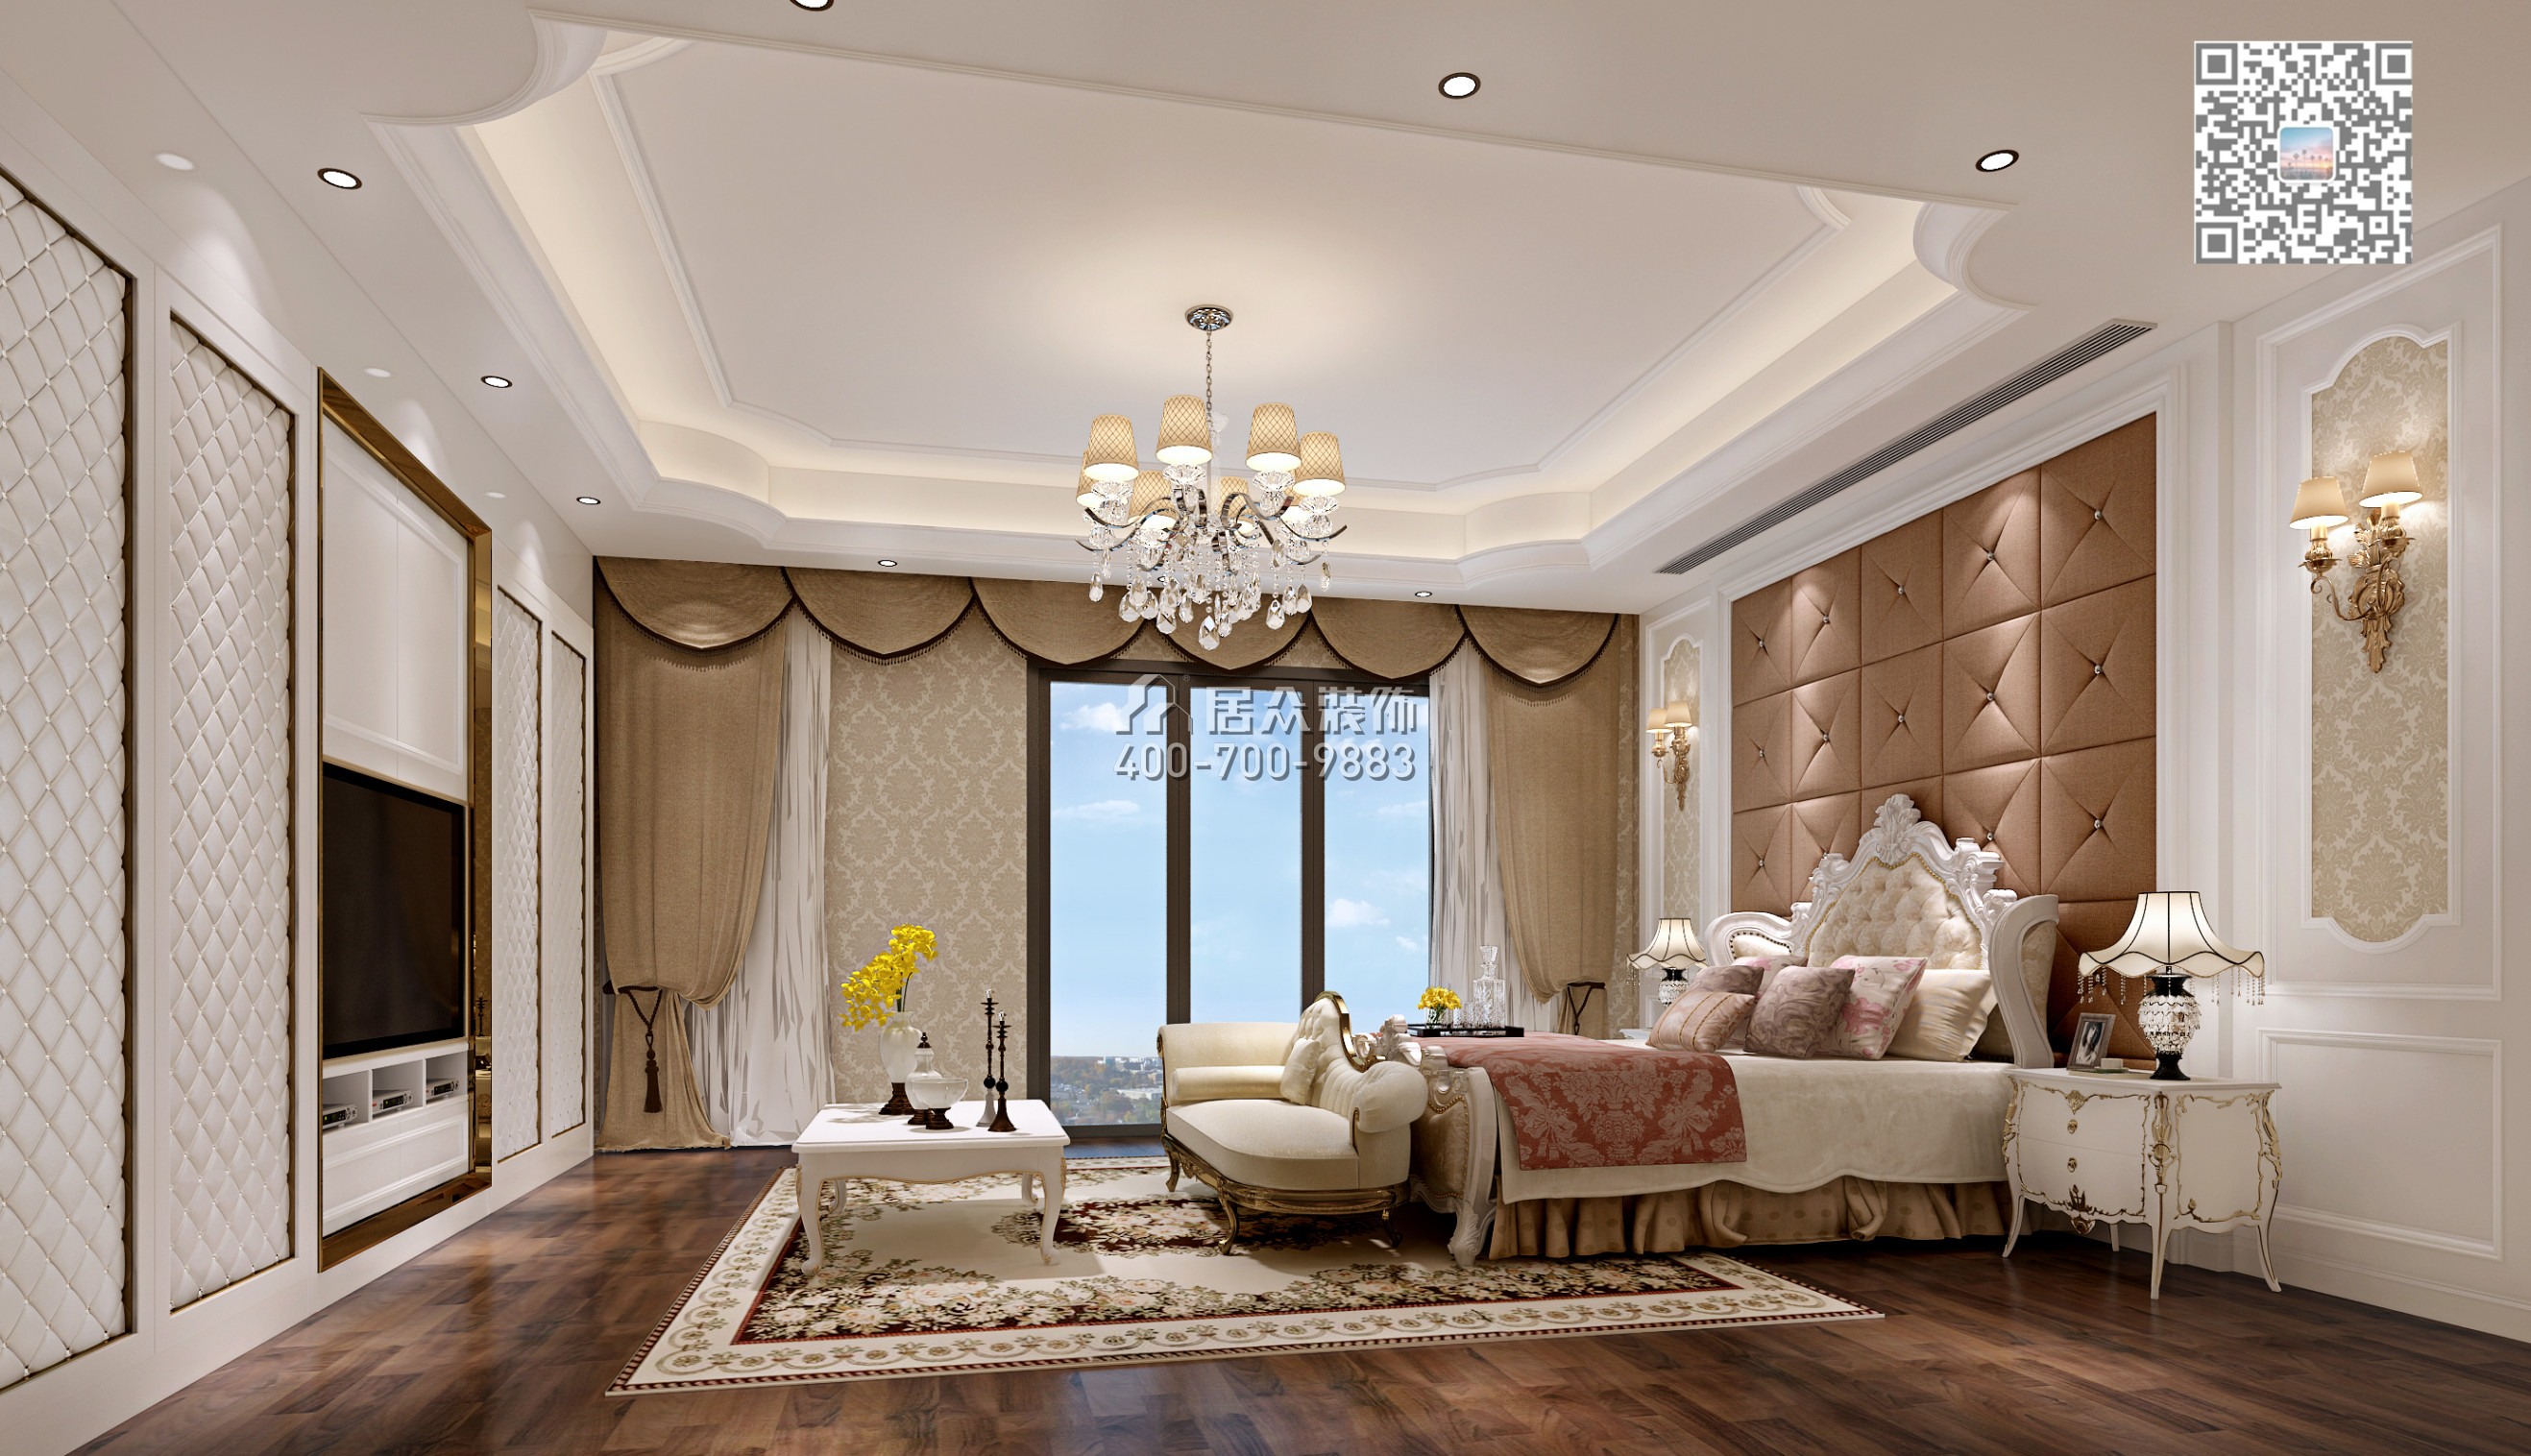 仁山智水花园三期375平方米欧式风格复式户型卧室装修效果图